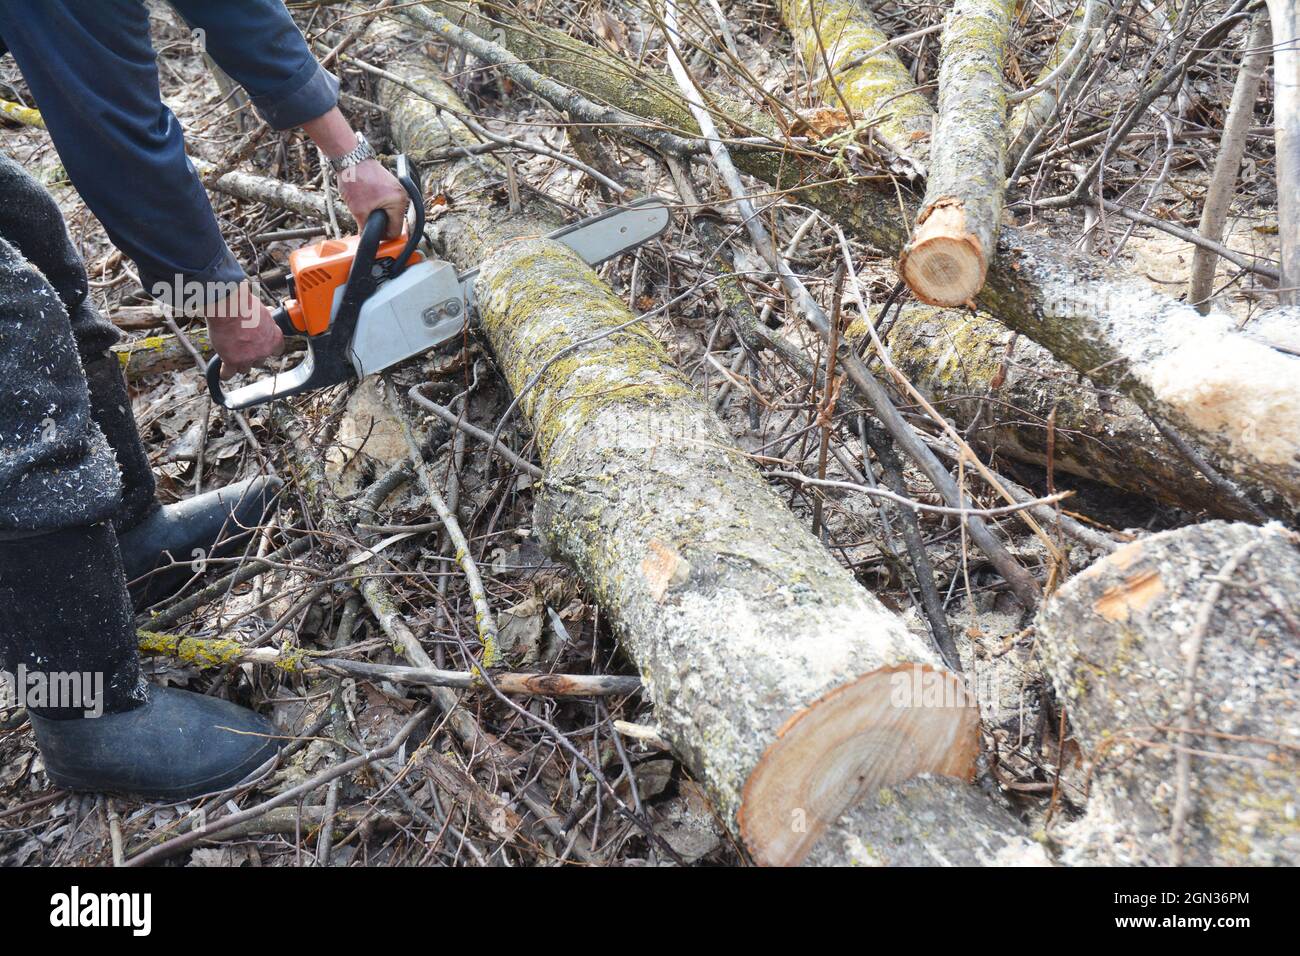 Arbeiter Hände mit Benzin Kettensäge schneiden Bäume. Ein Mann mit einer Benzinkette säge im Wald Bäume. Stockfoto